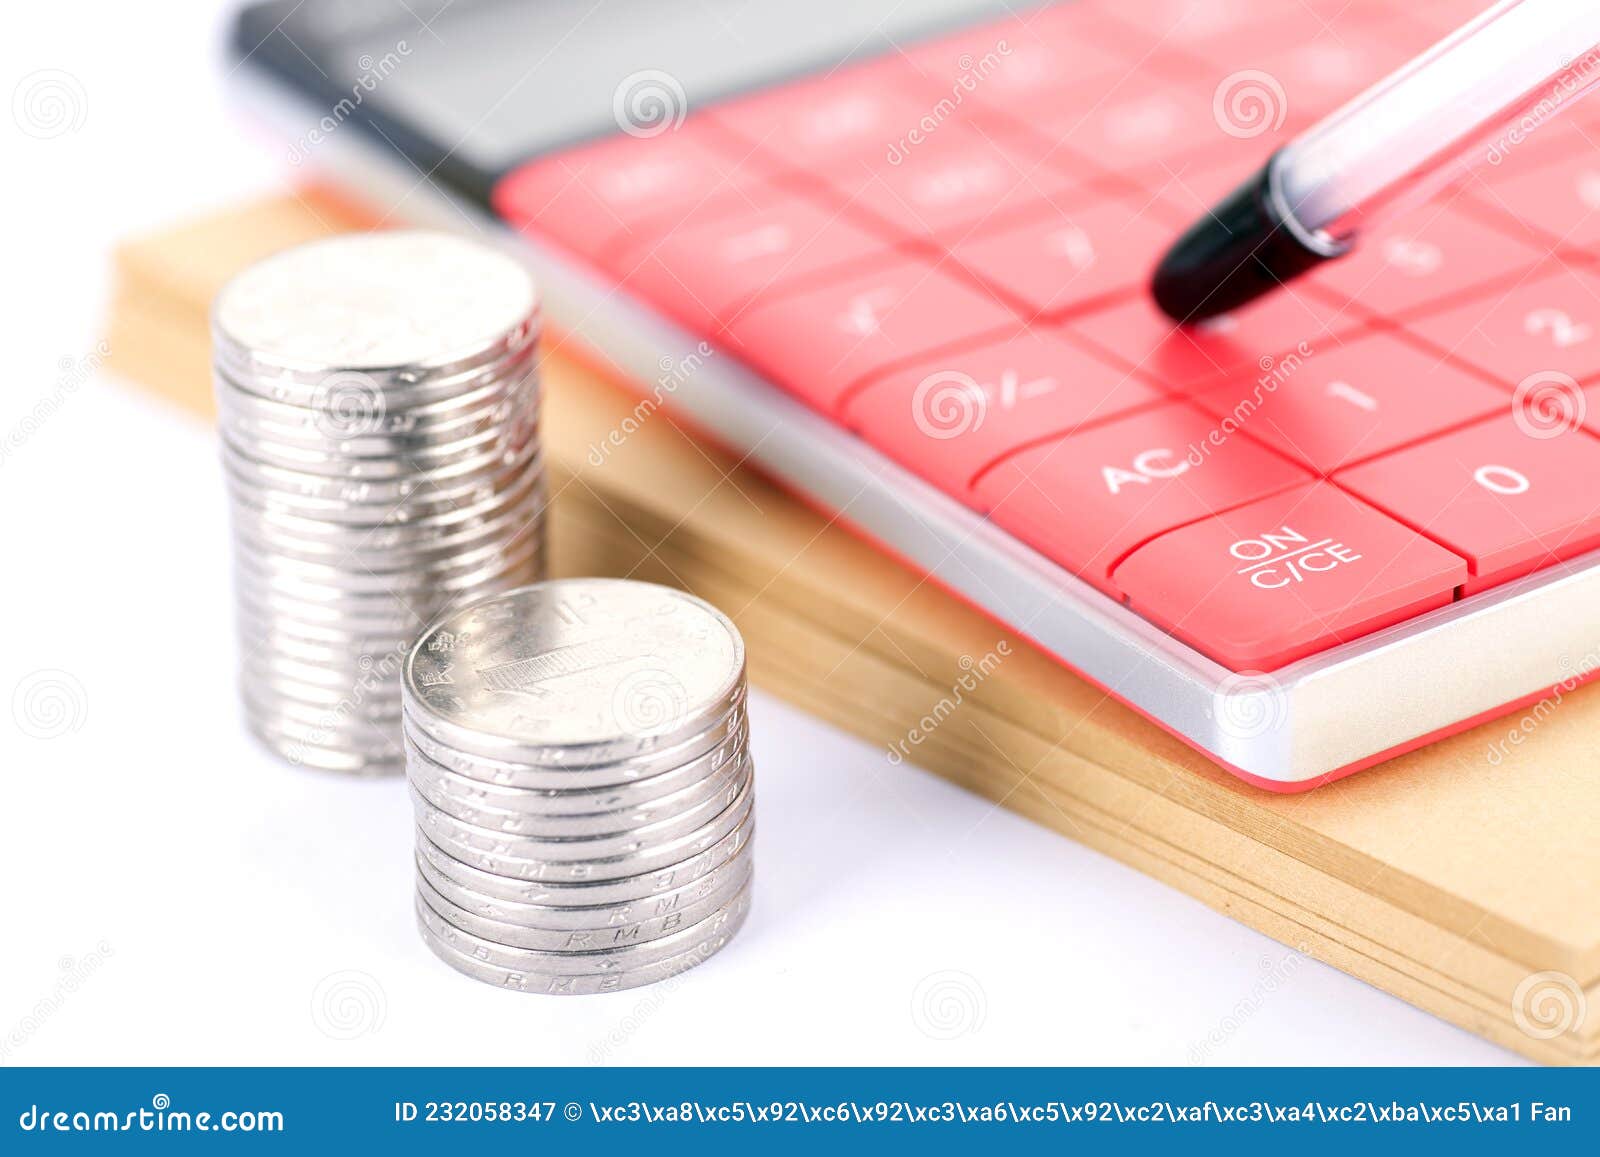 coins and calculators, financial stills